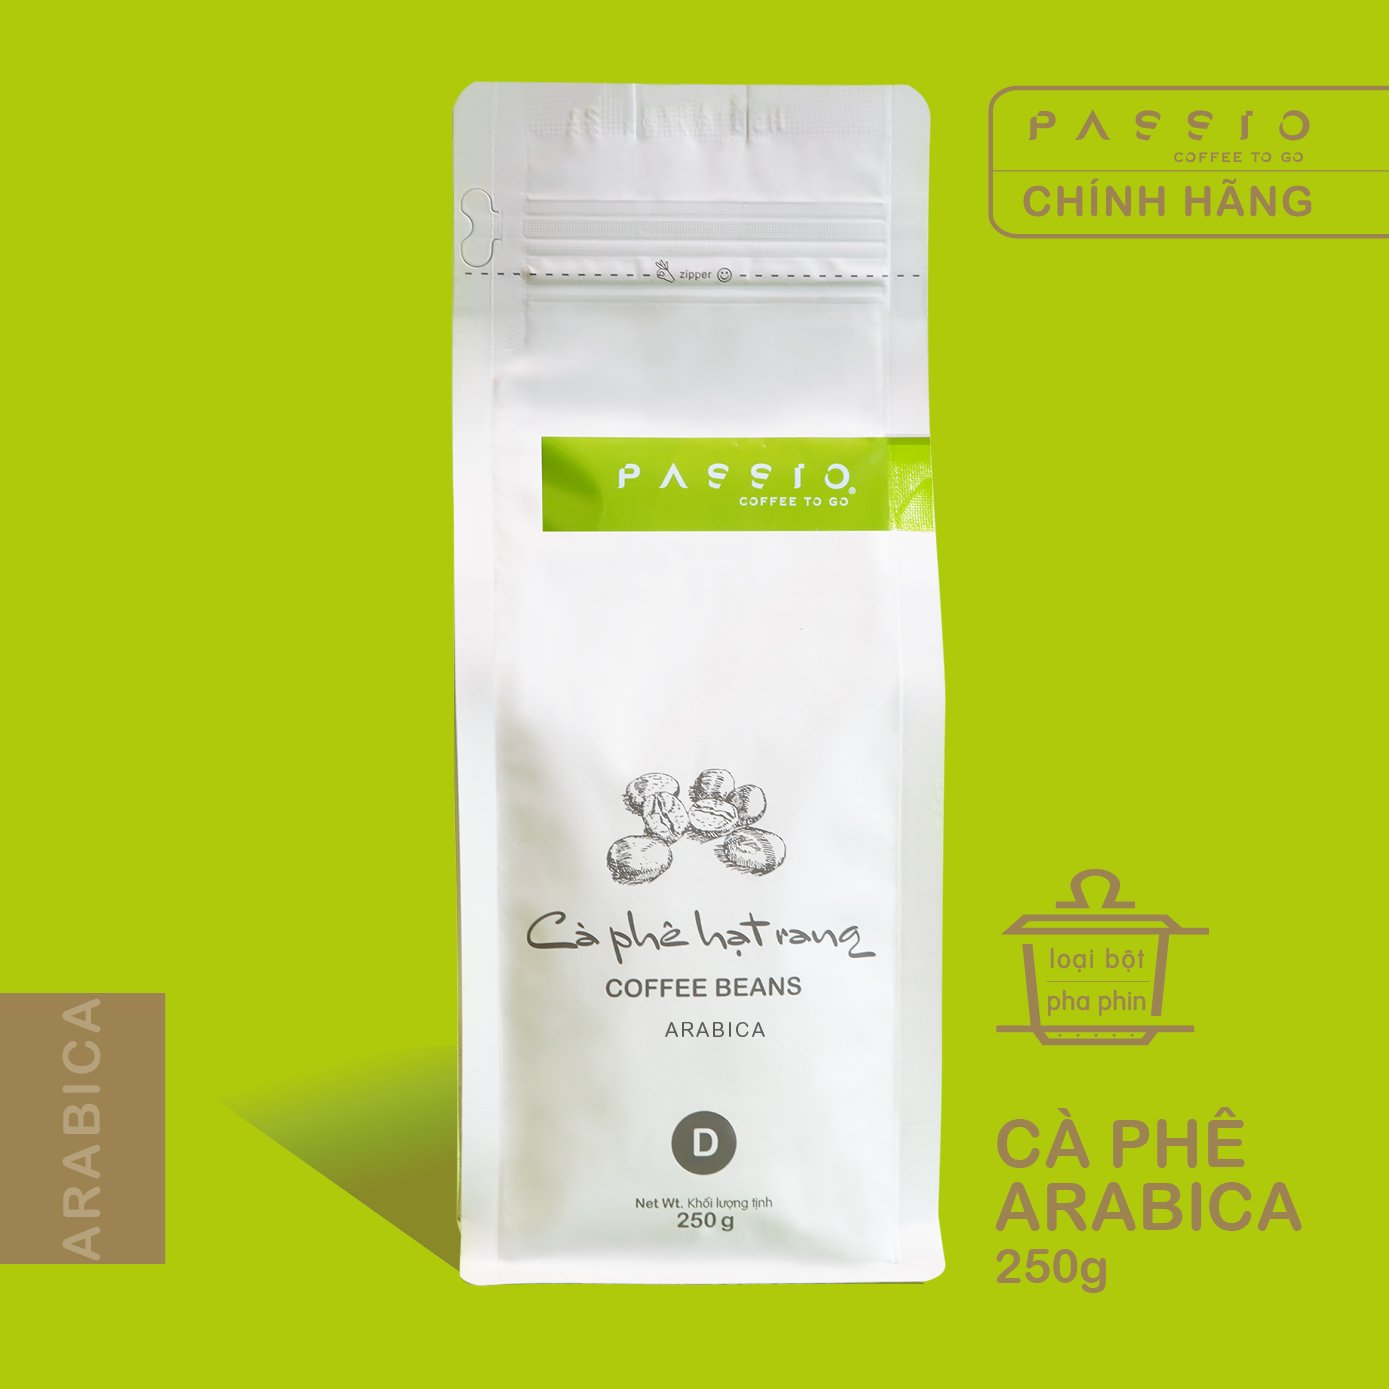 Cà phê Arabica dạng Bột (pha phin) nguyên chất 100% rang mộc - Passio Coffee (250g)